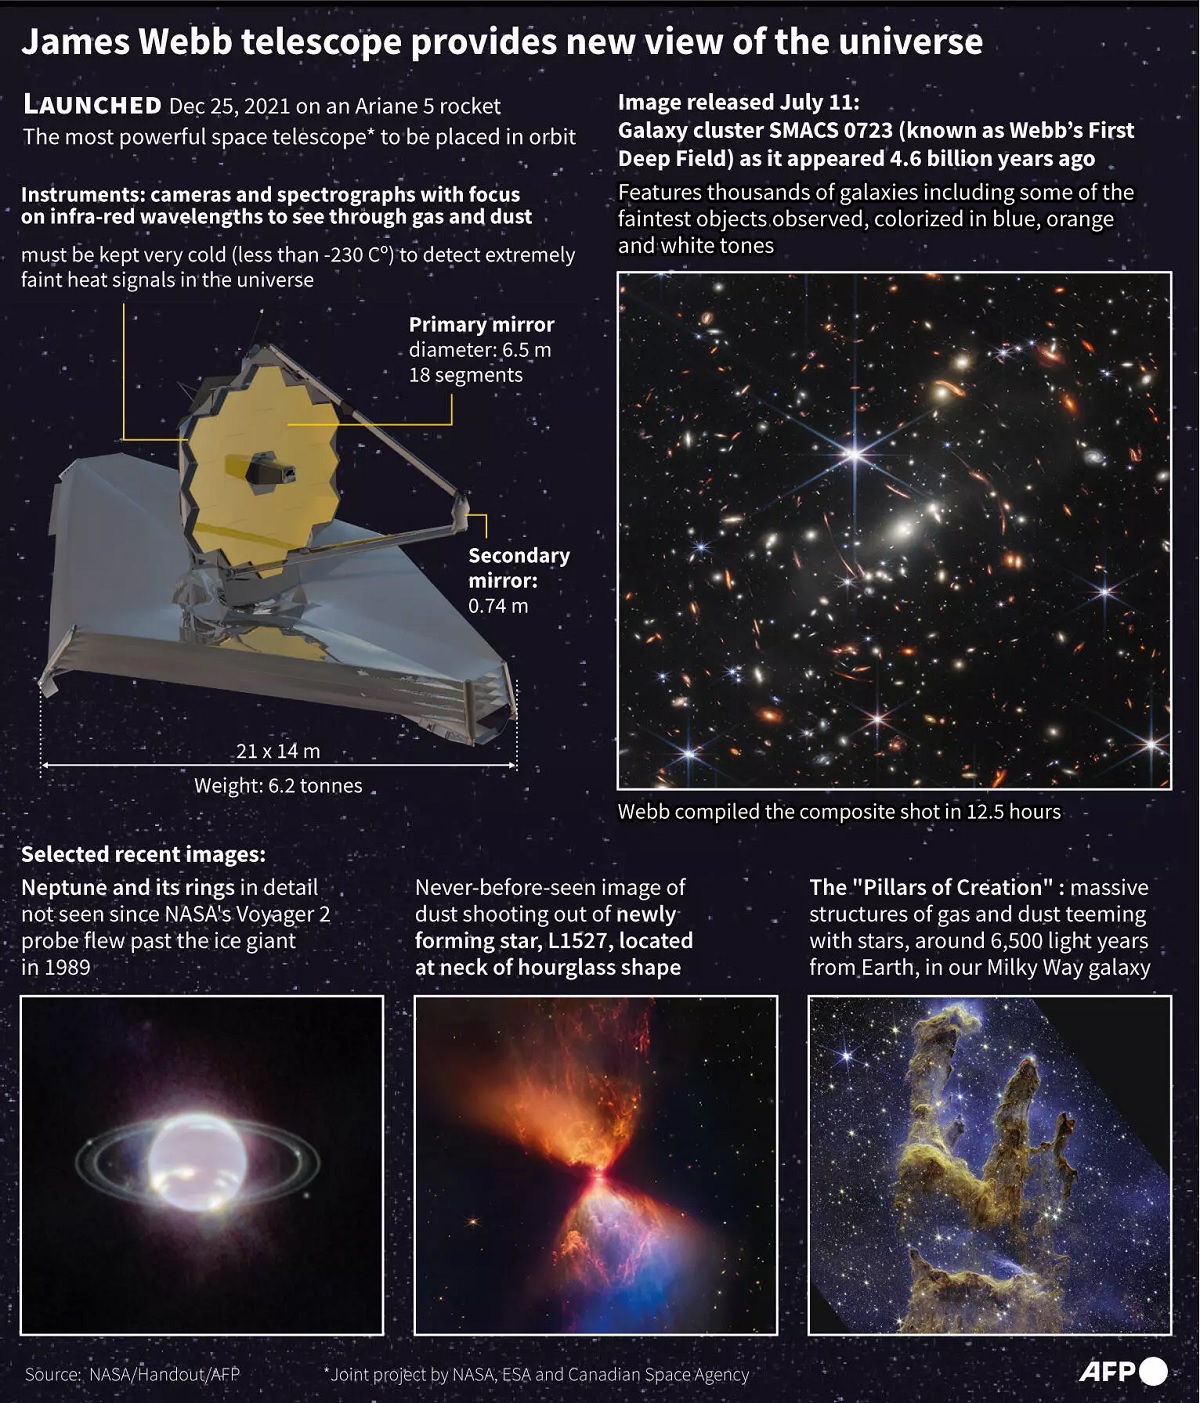 Webb teleskopu yıldızların yeni çağını vaat ediyor